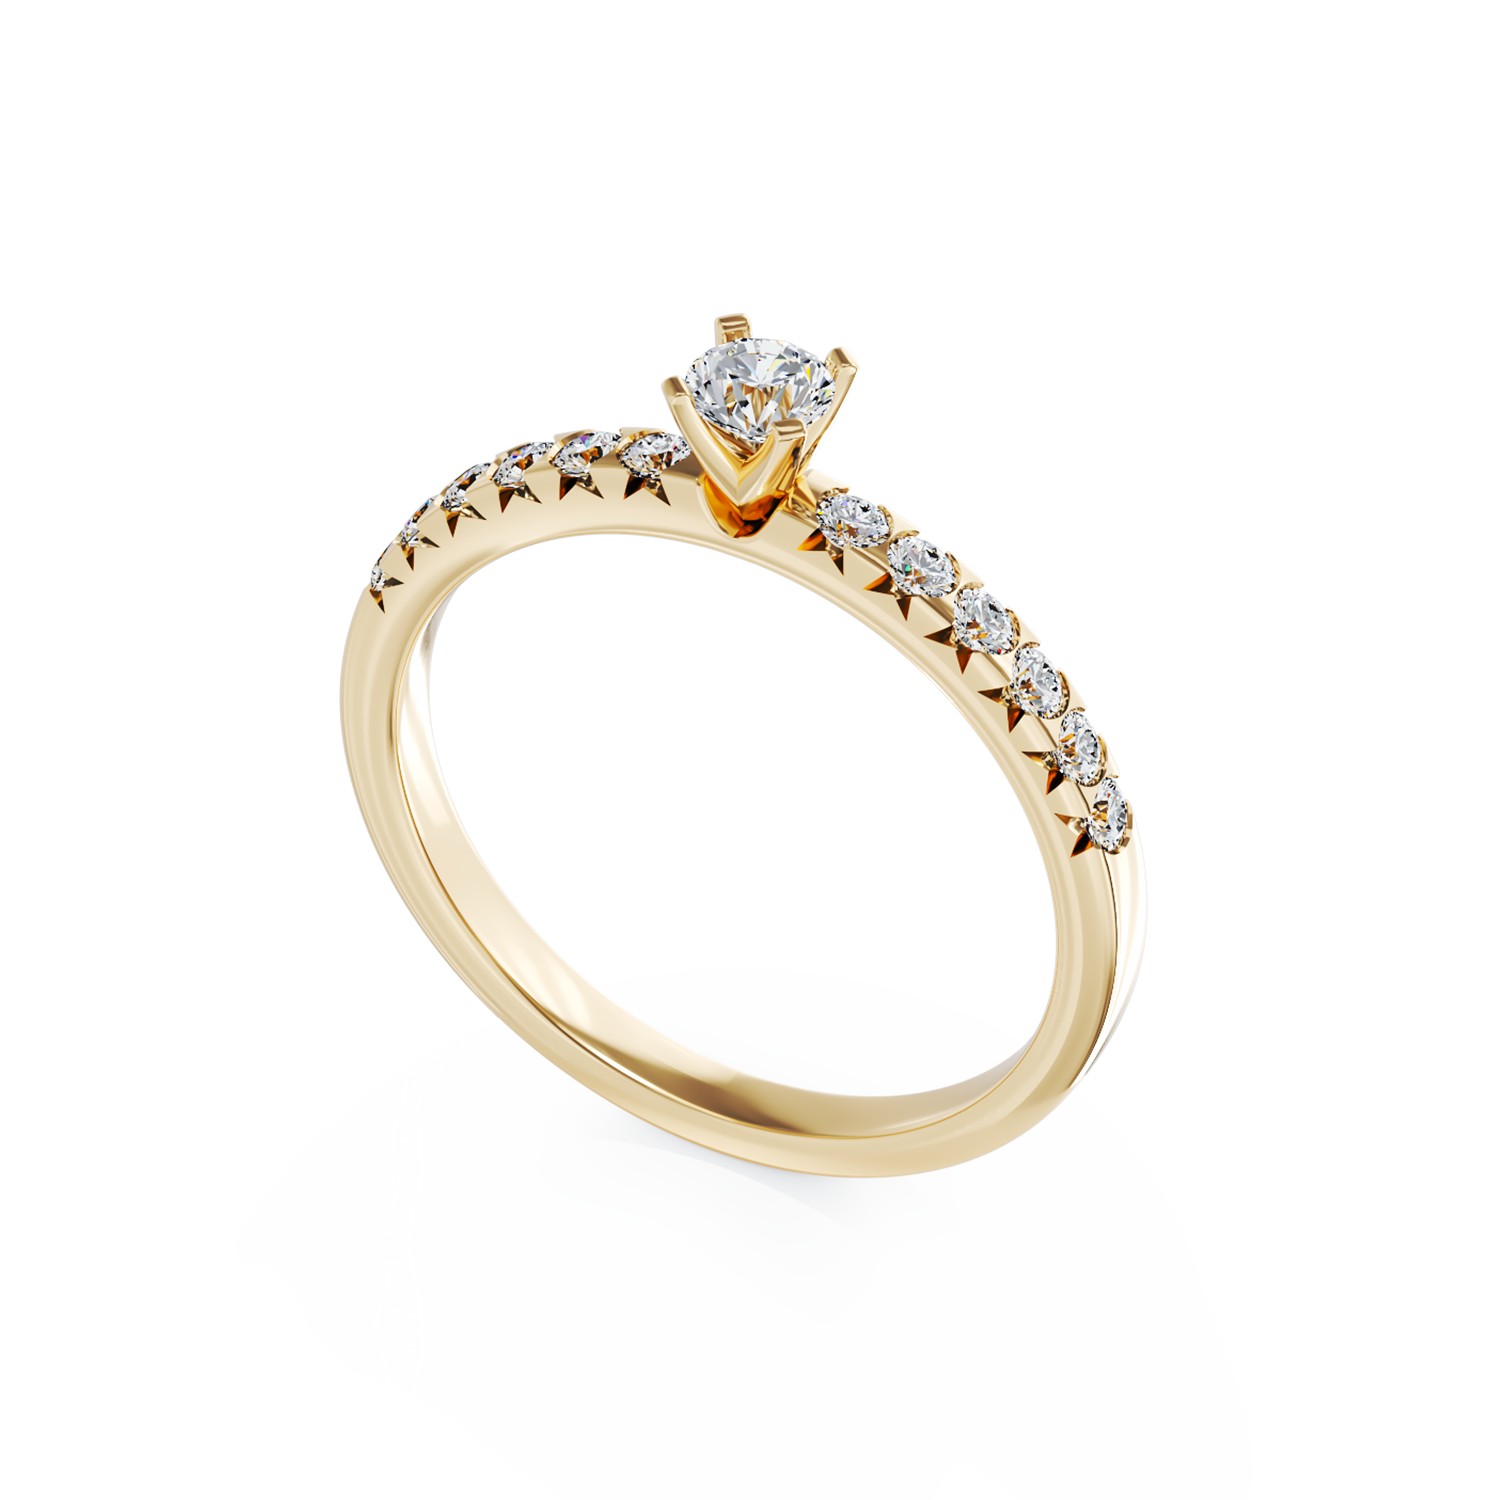 Eljegyzési gyűrű 18K-os sárga aranyból 0,15ct gyémánttal és 0,28ct gyémántokkal. Gramm: 2,53